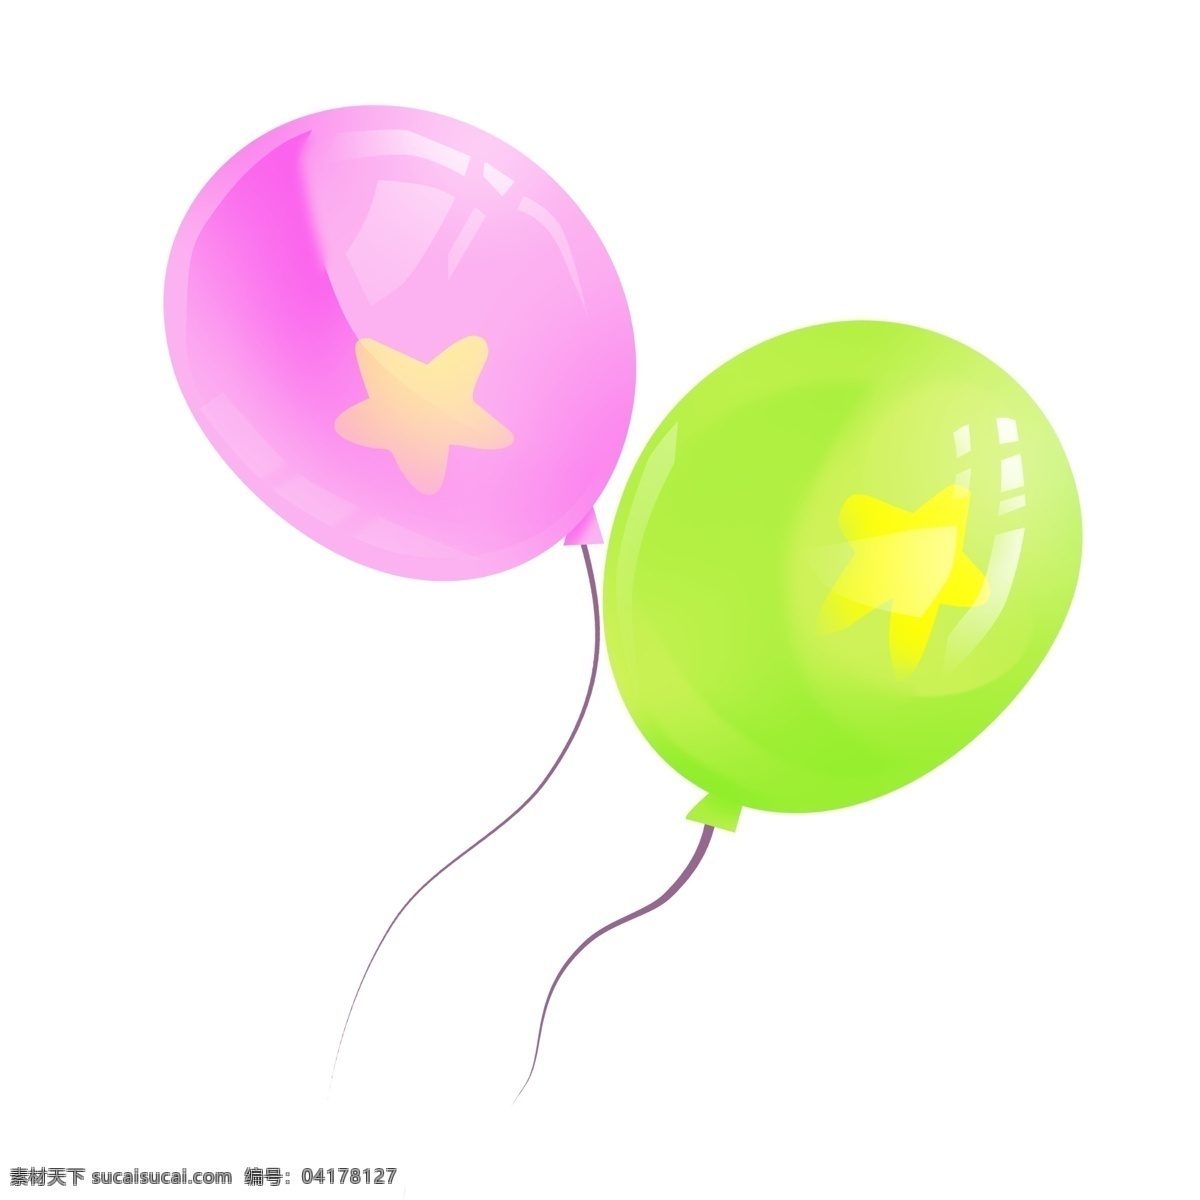 紫色绿色气球 气球 星星 漂浮